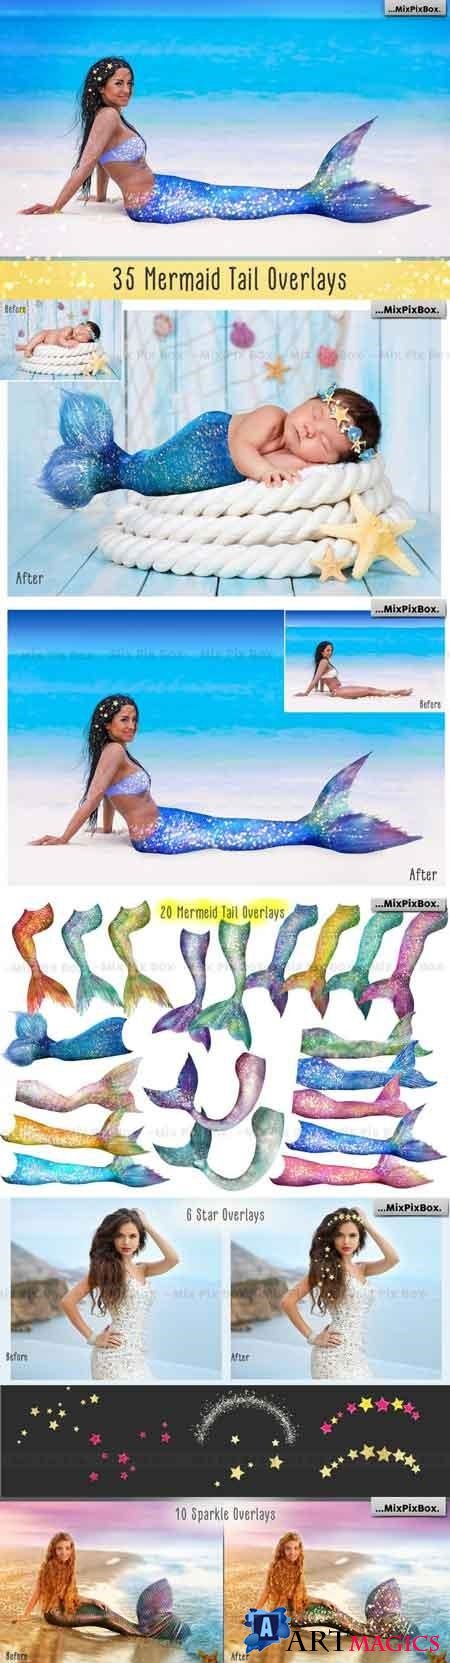 Mermaid Tail Overlays - 2711366